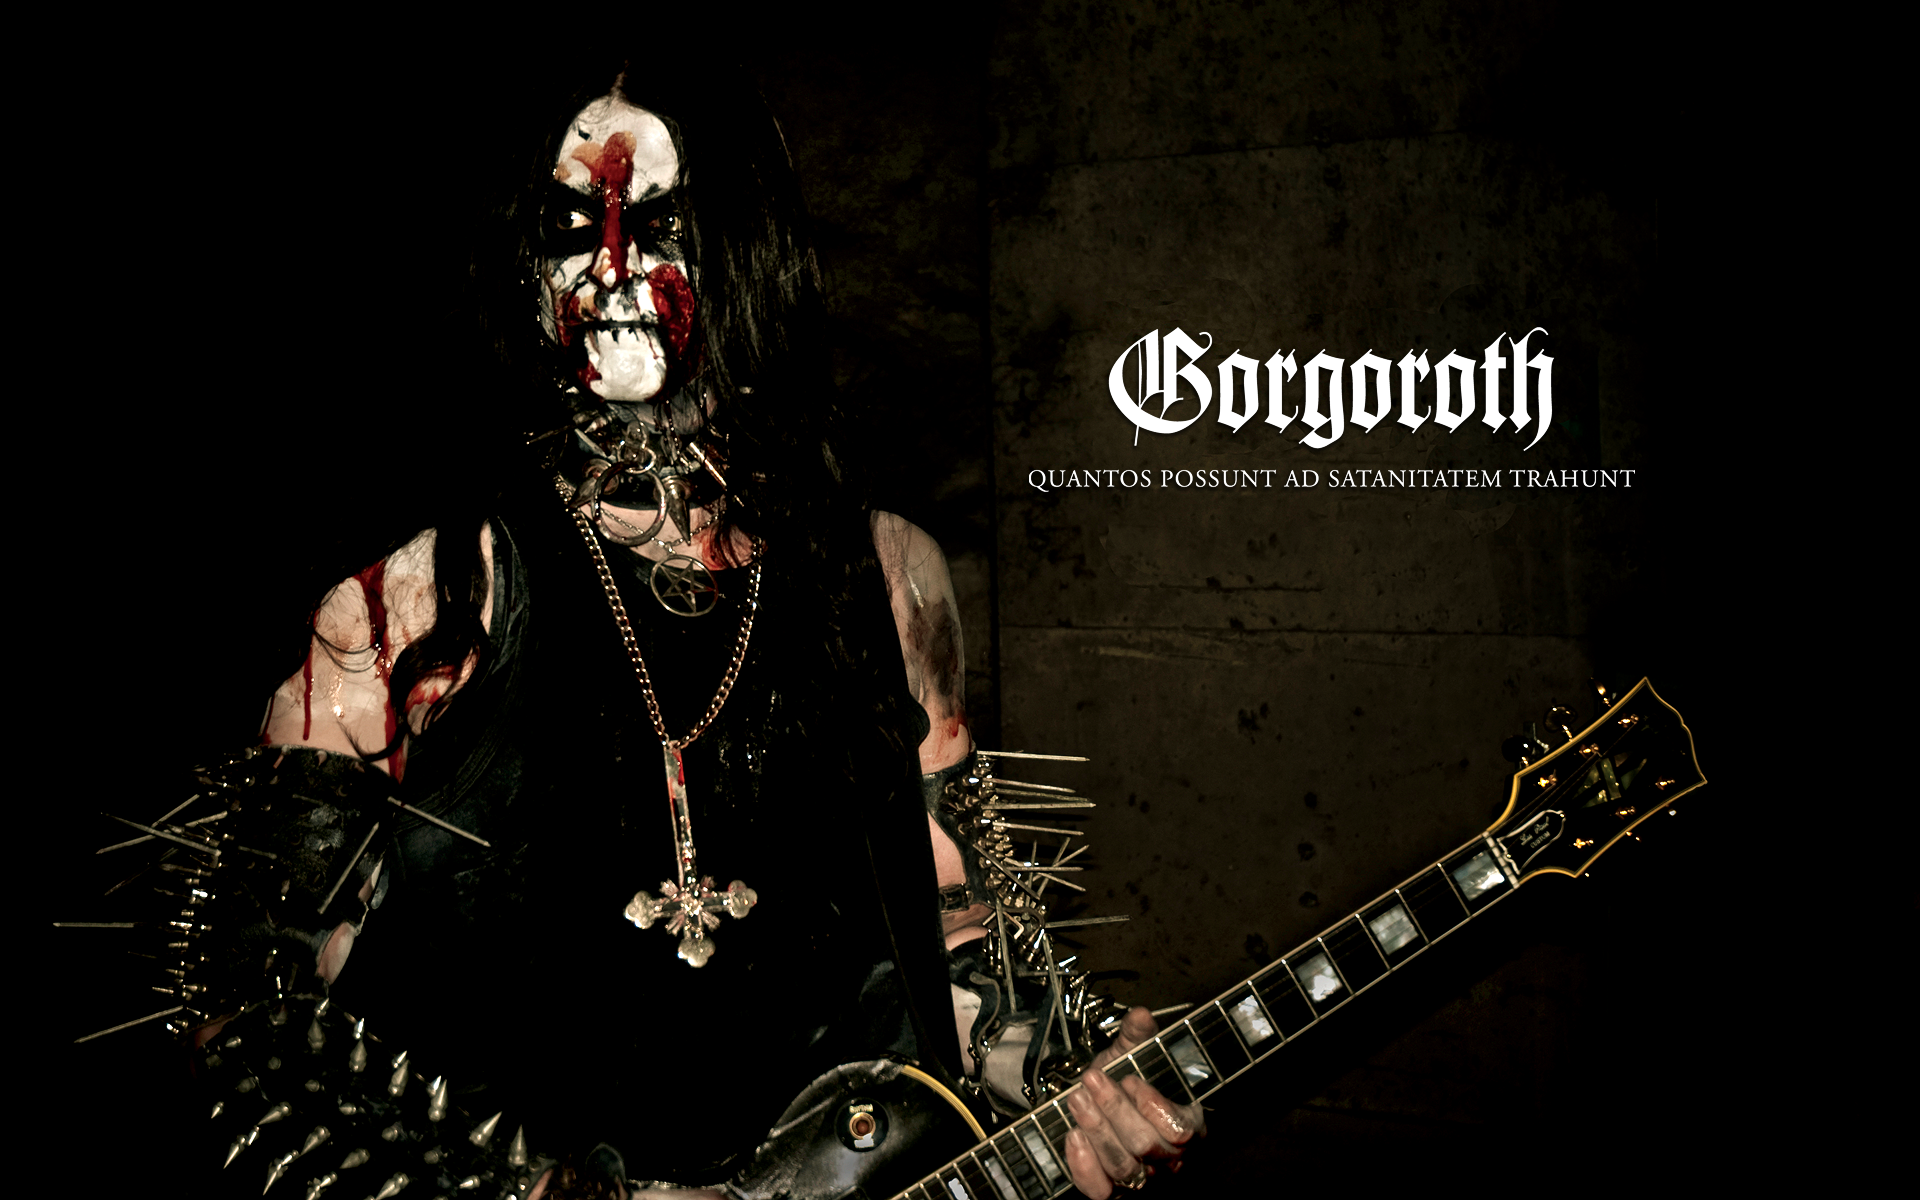 music, guitars, black metal, Gorgoroth - desktop wallpaper